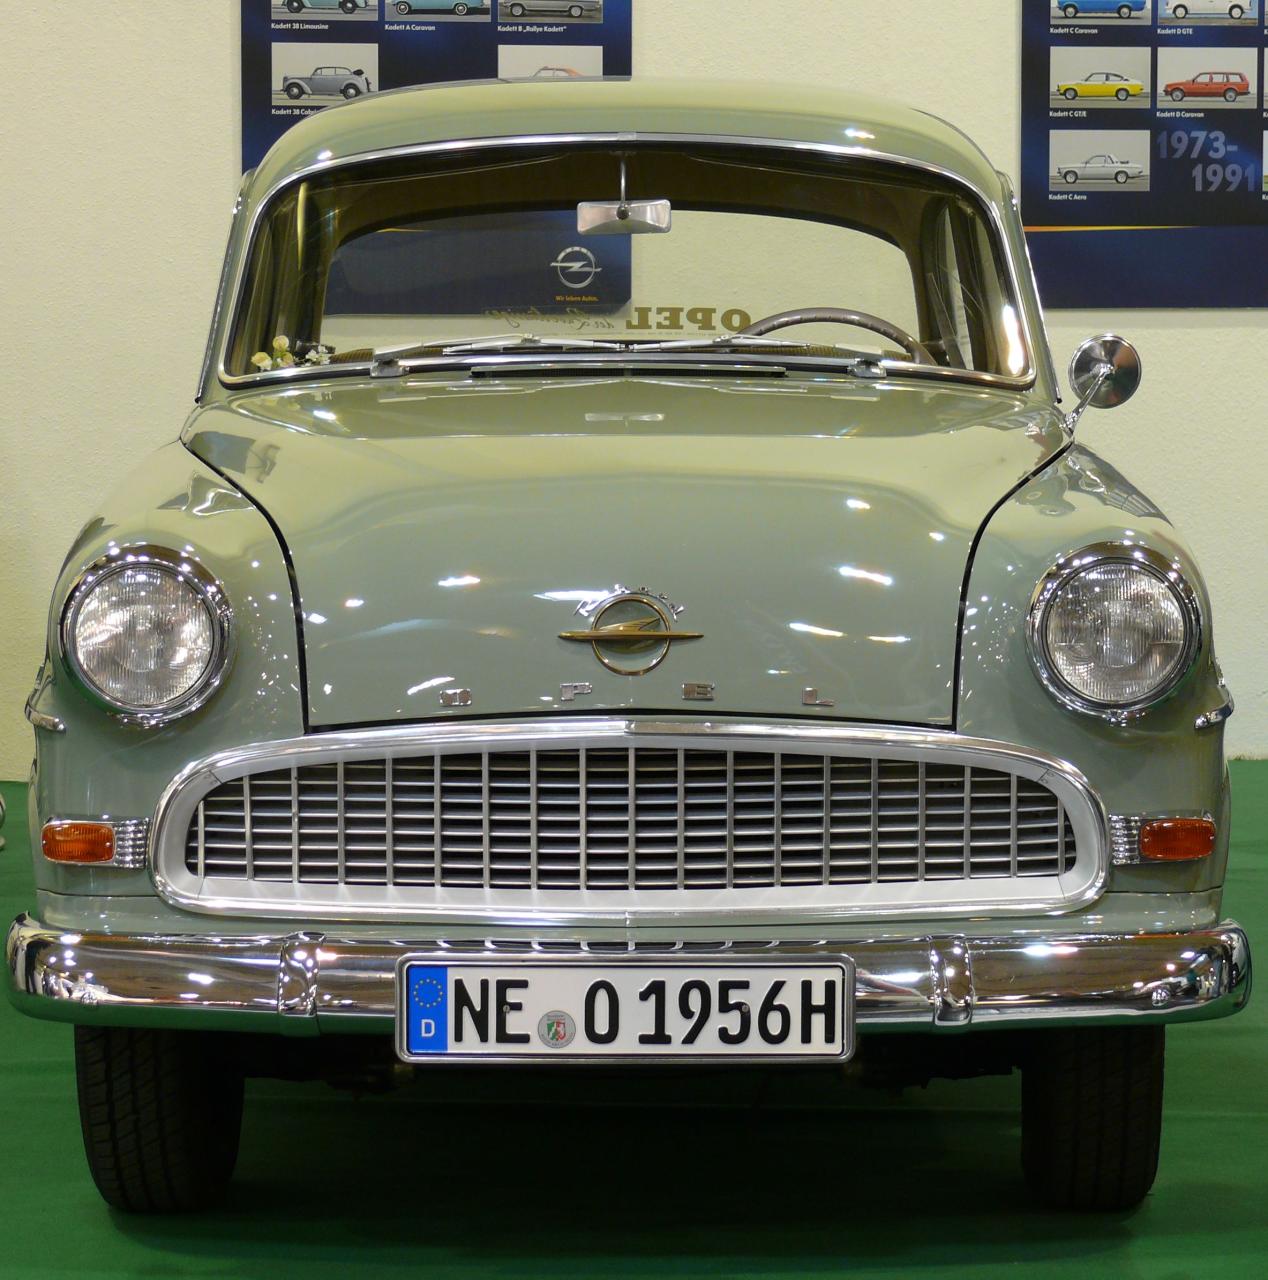 Opel Olympia Rekord 1956 grey v | Flickr - Photo Sharing!